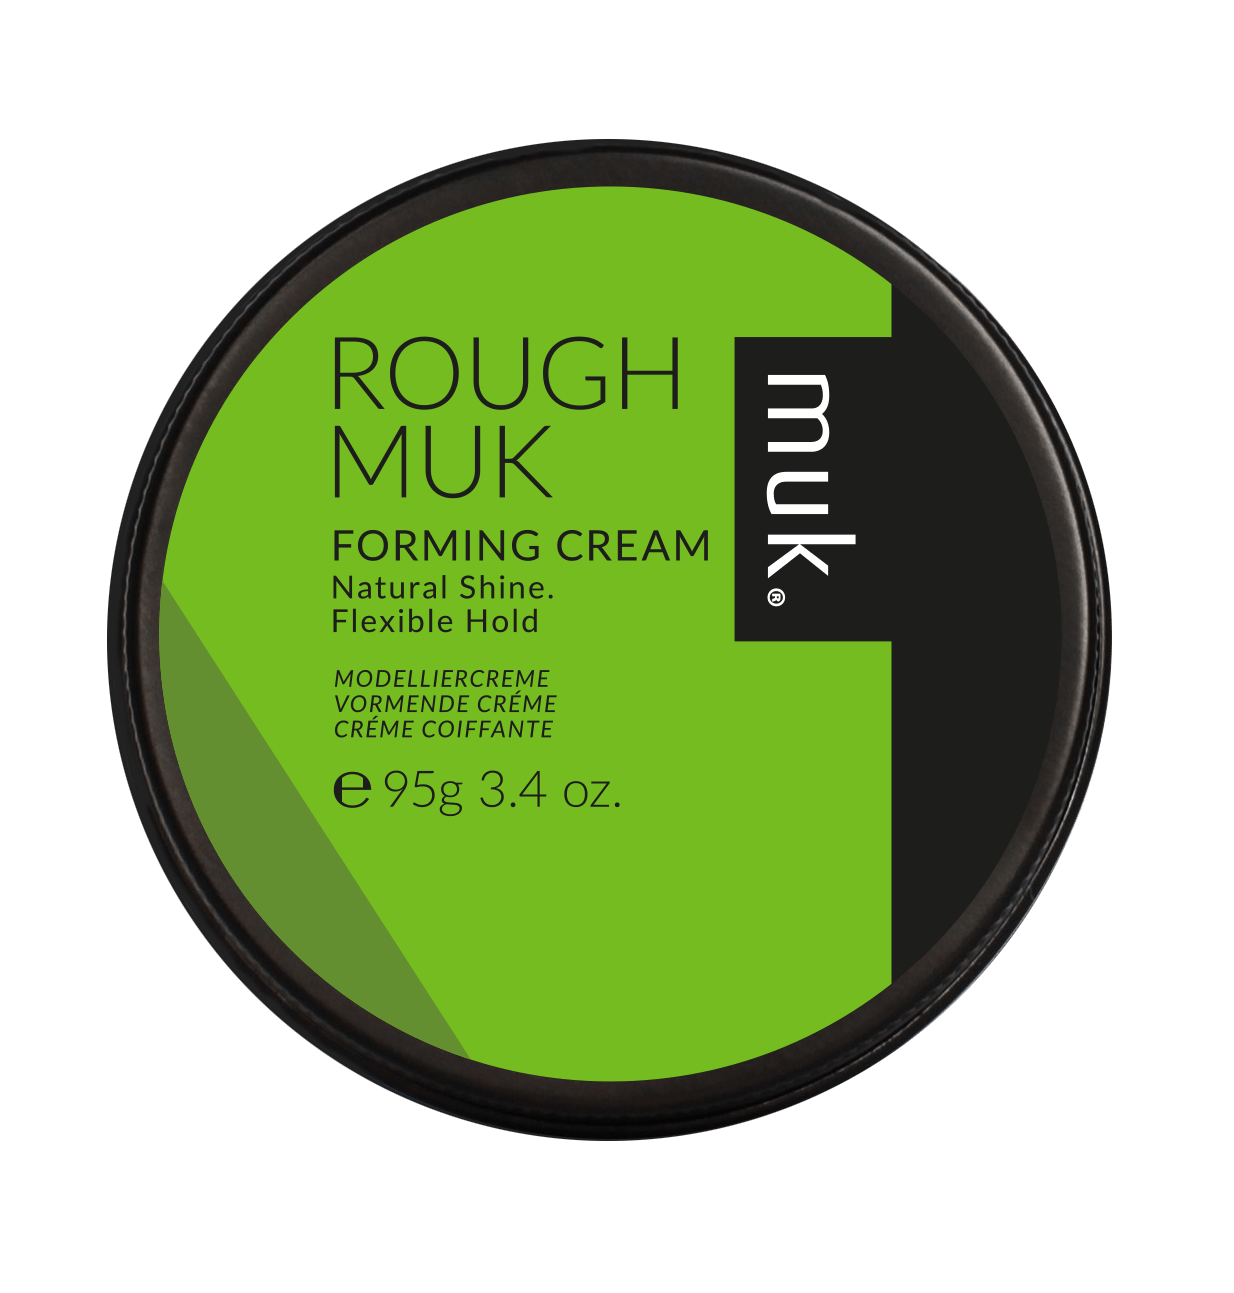 Muk Rough muk Forming Cream 95g